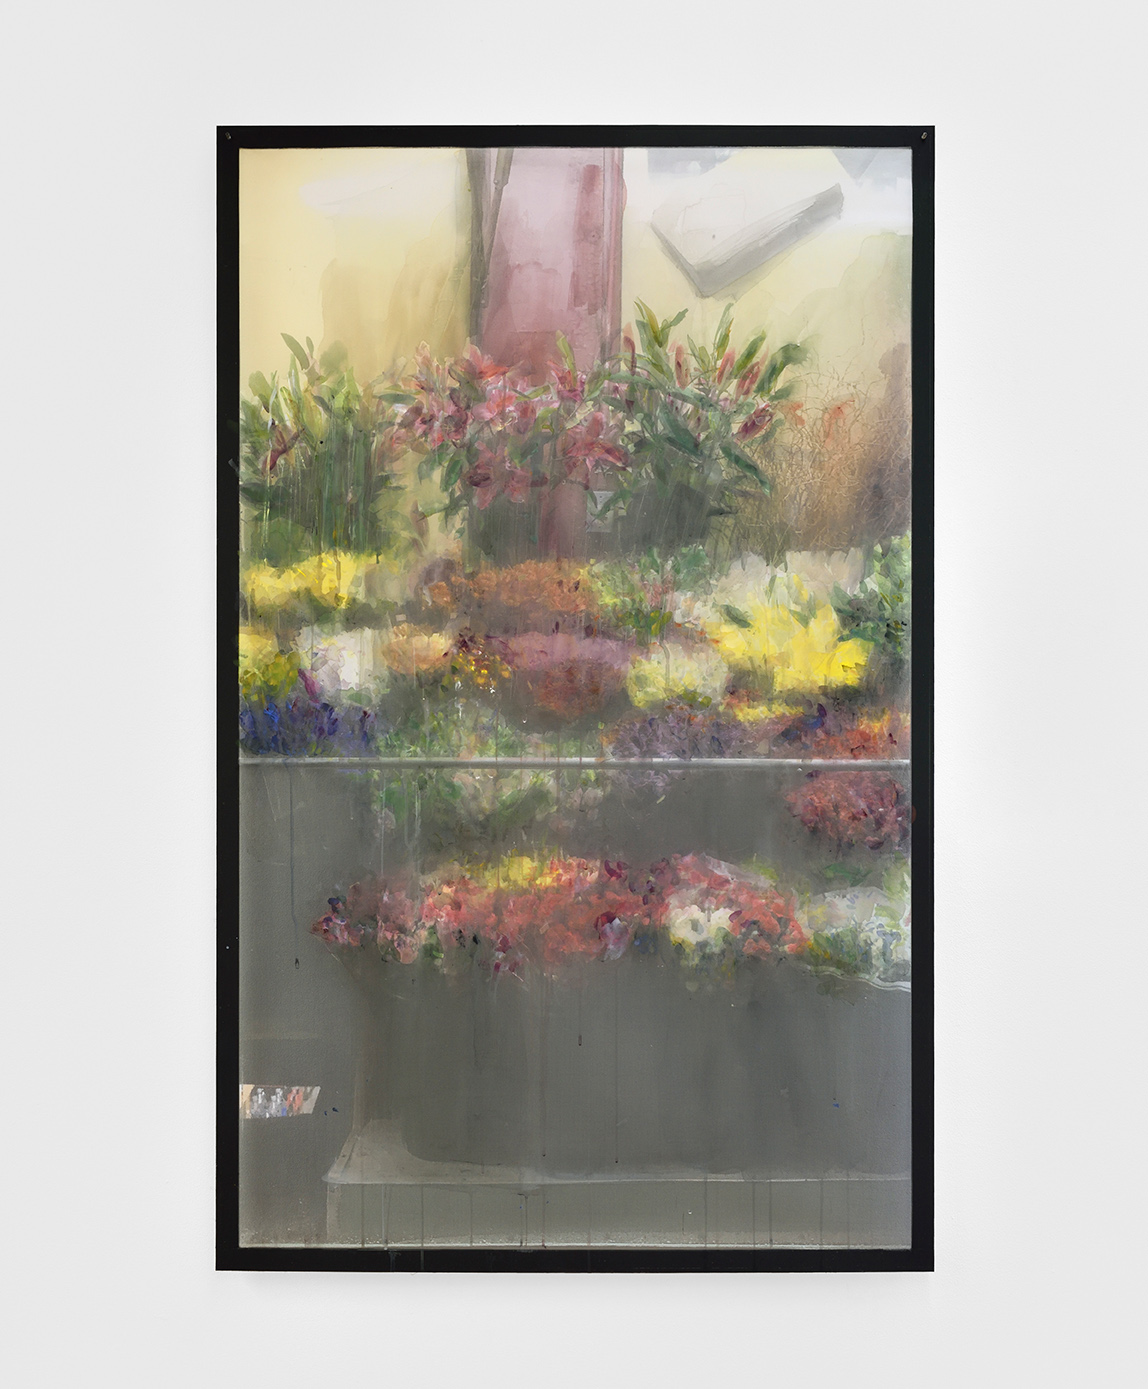   Deli Window I,  2019 gouache and watercolour on printed veil, dibond 126,5 x 79 cm  private collection  © Rebecca Fanuele 